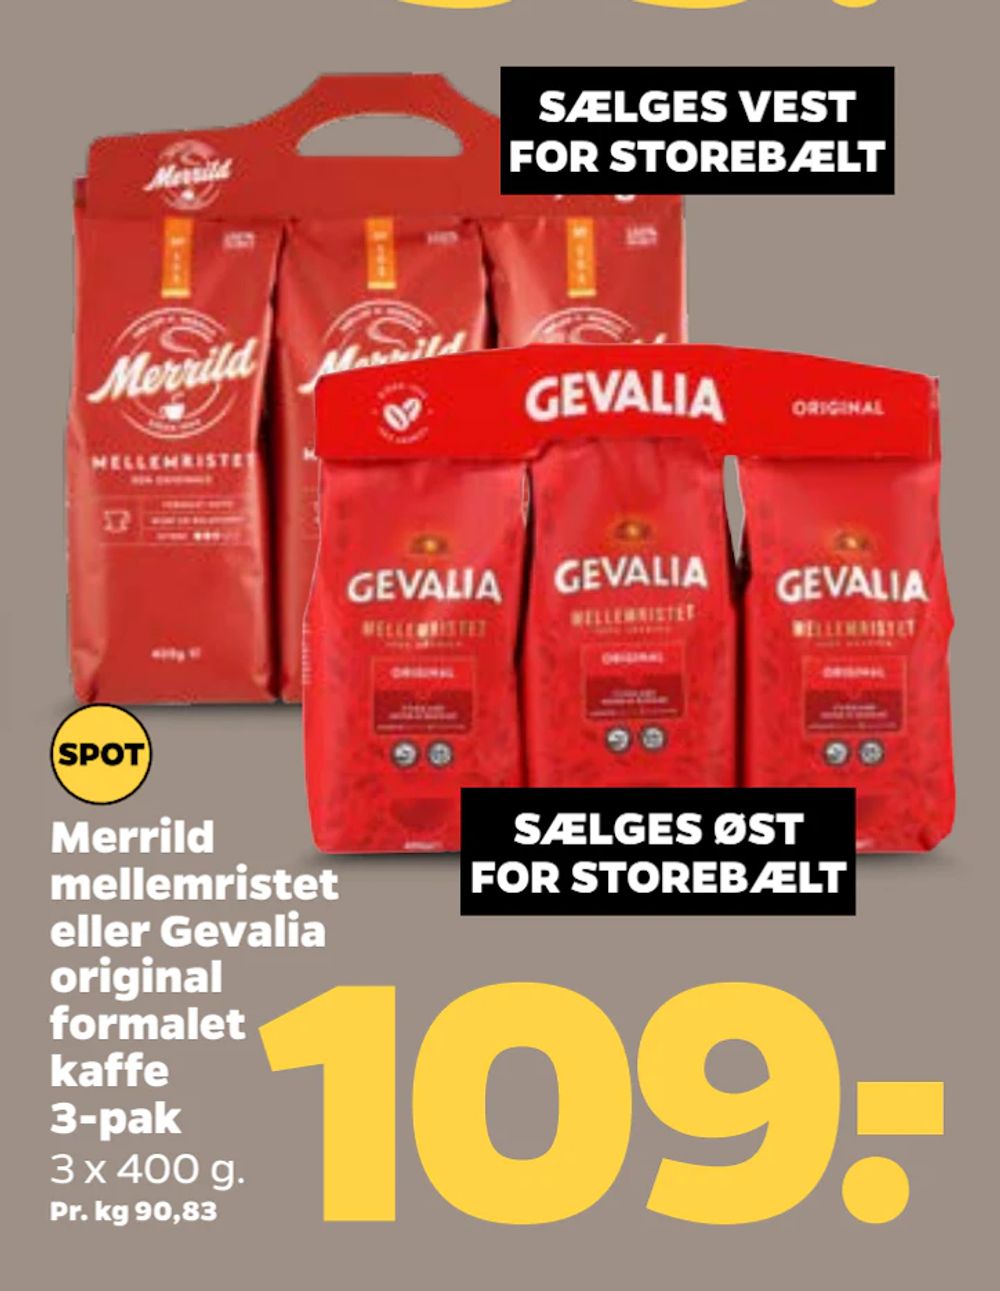 Tilbud på Merrild mellemristet eller Gevalia original formalet kaffe 3-pak fra Netto til 109 kr.